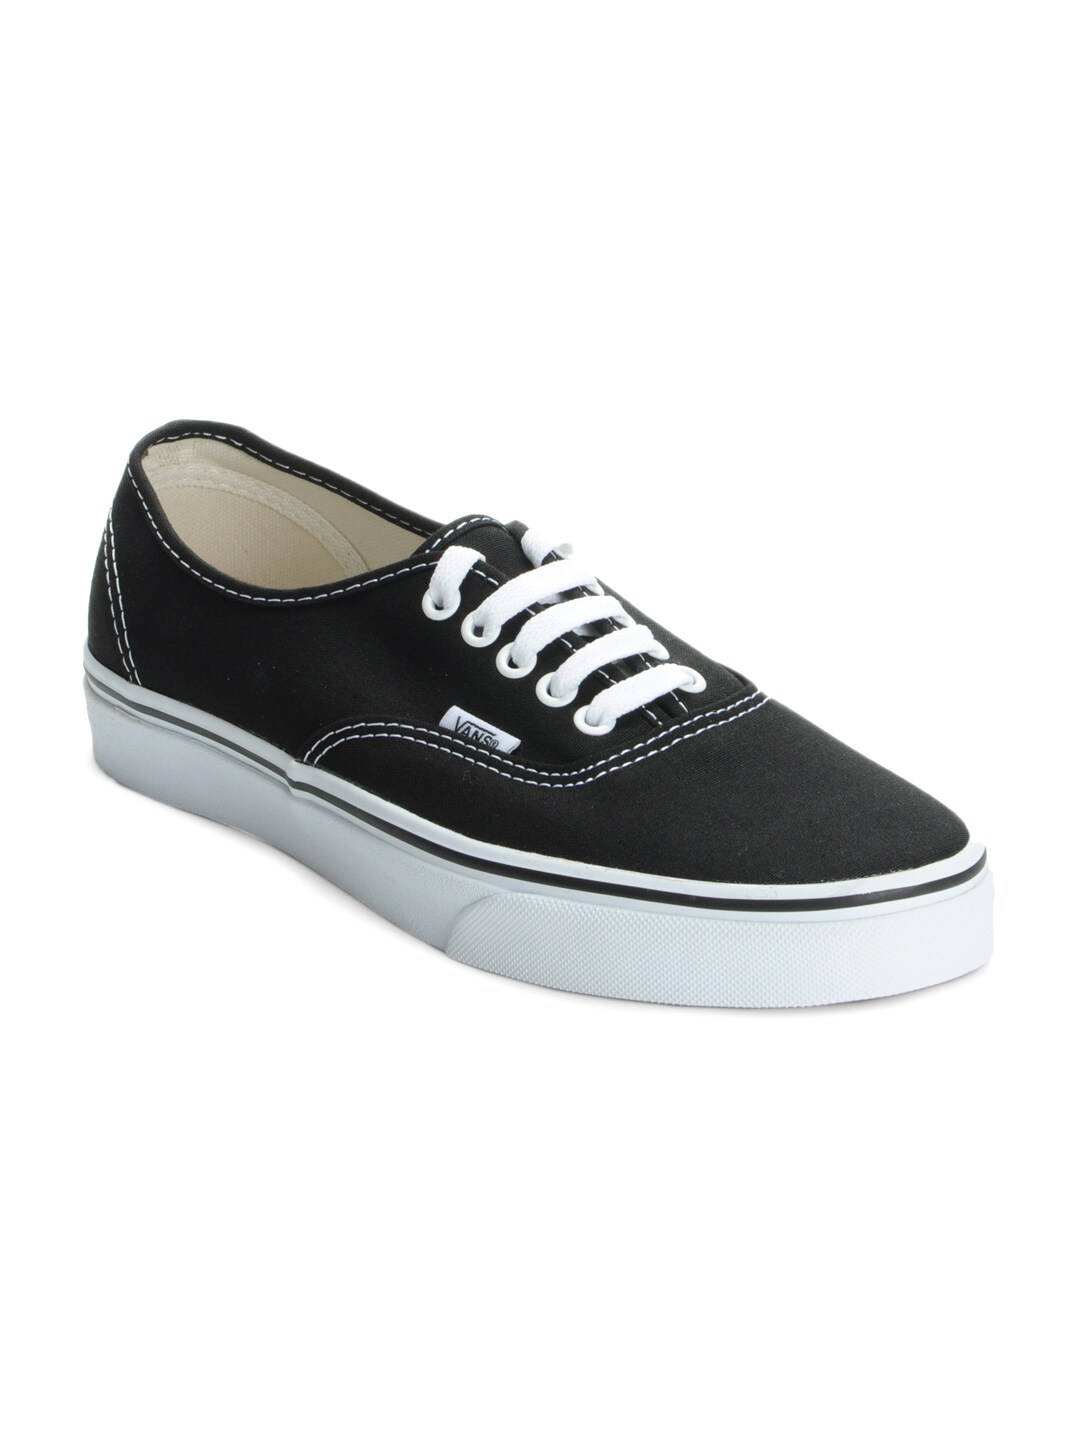 Vans Men Black Casual Shoes